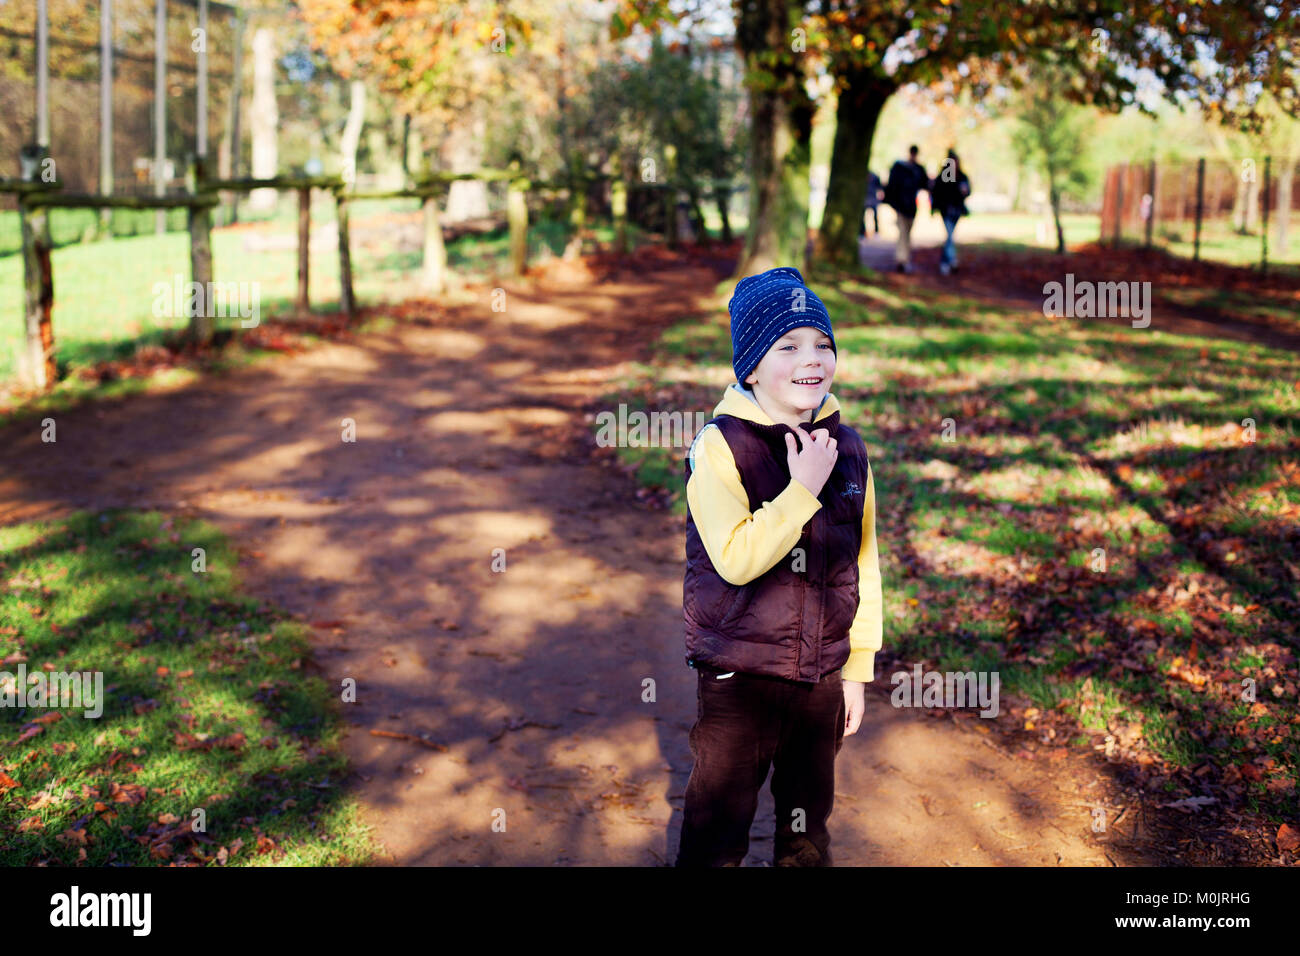 Un bambino sorridente in abiti caldi è pronto a divertirsi in un parco d'oro d'autunno nel Regno Unito. Autunno luce, libertà, felicità, infanzia. Foto Stock